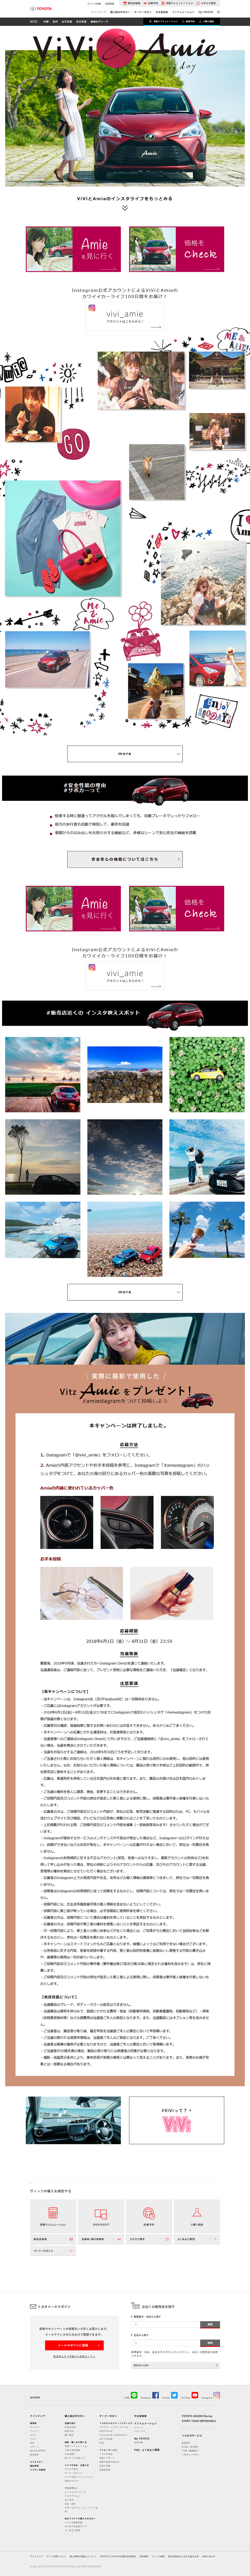 トヨタ ヴィッツ キャンペーン ViVi&Amie